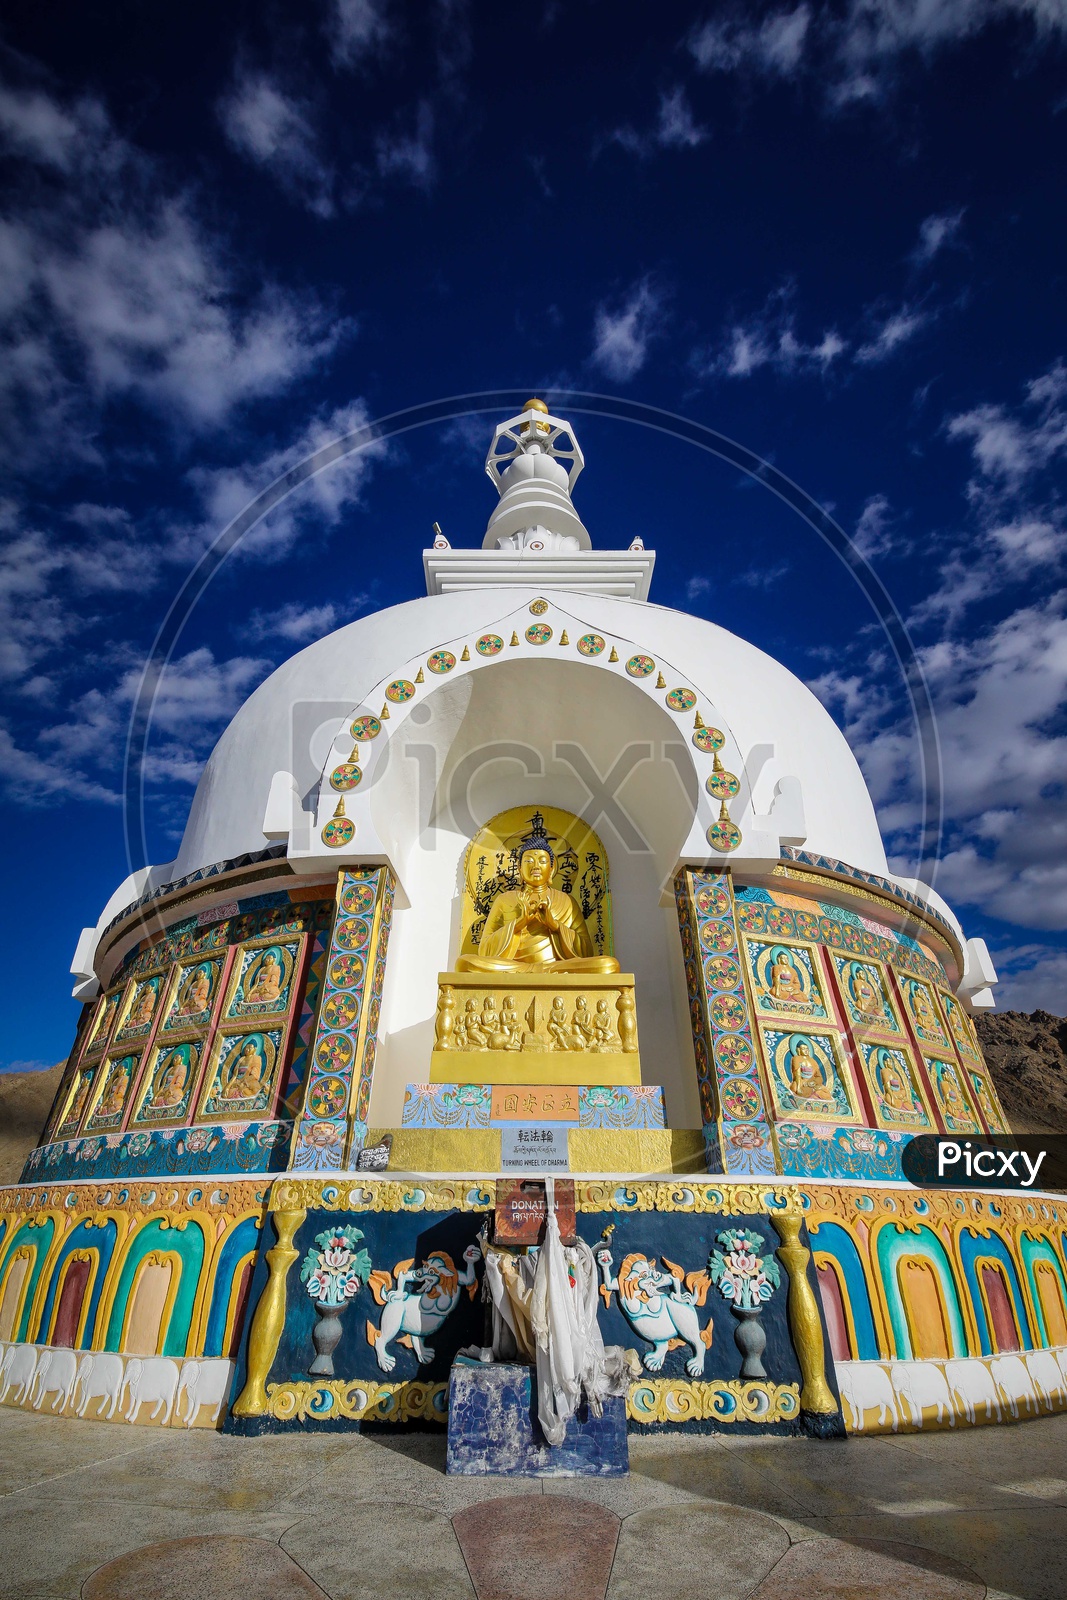 Architecture of Shanti Stupa